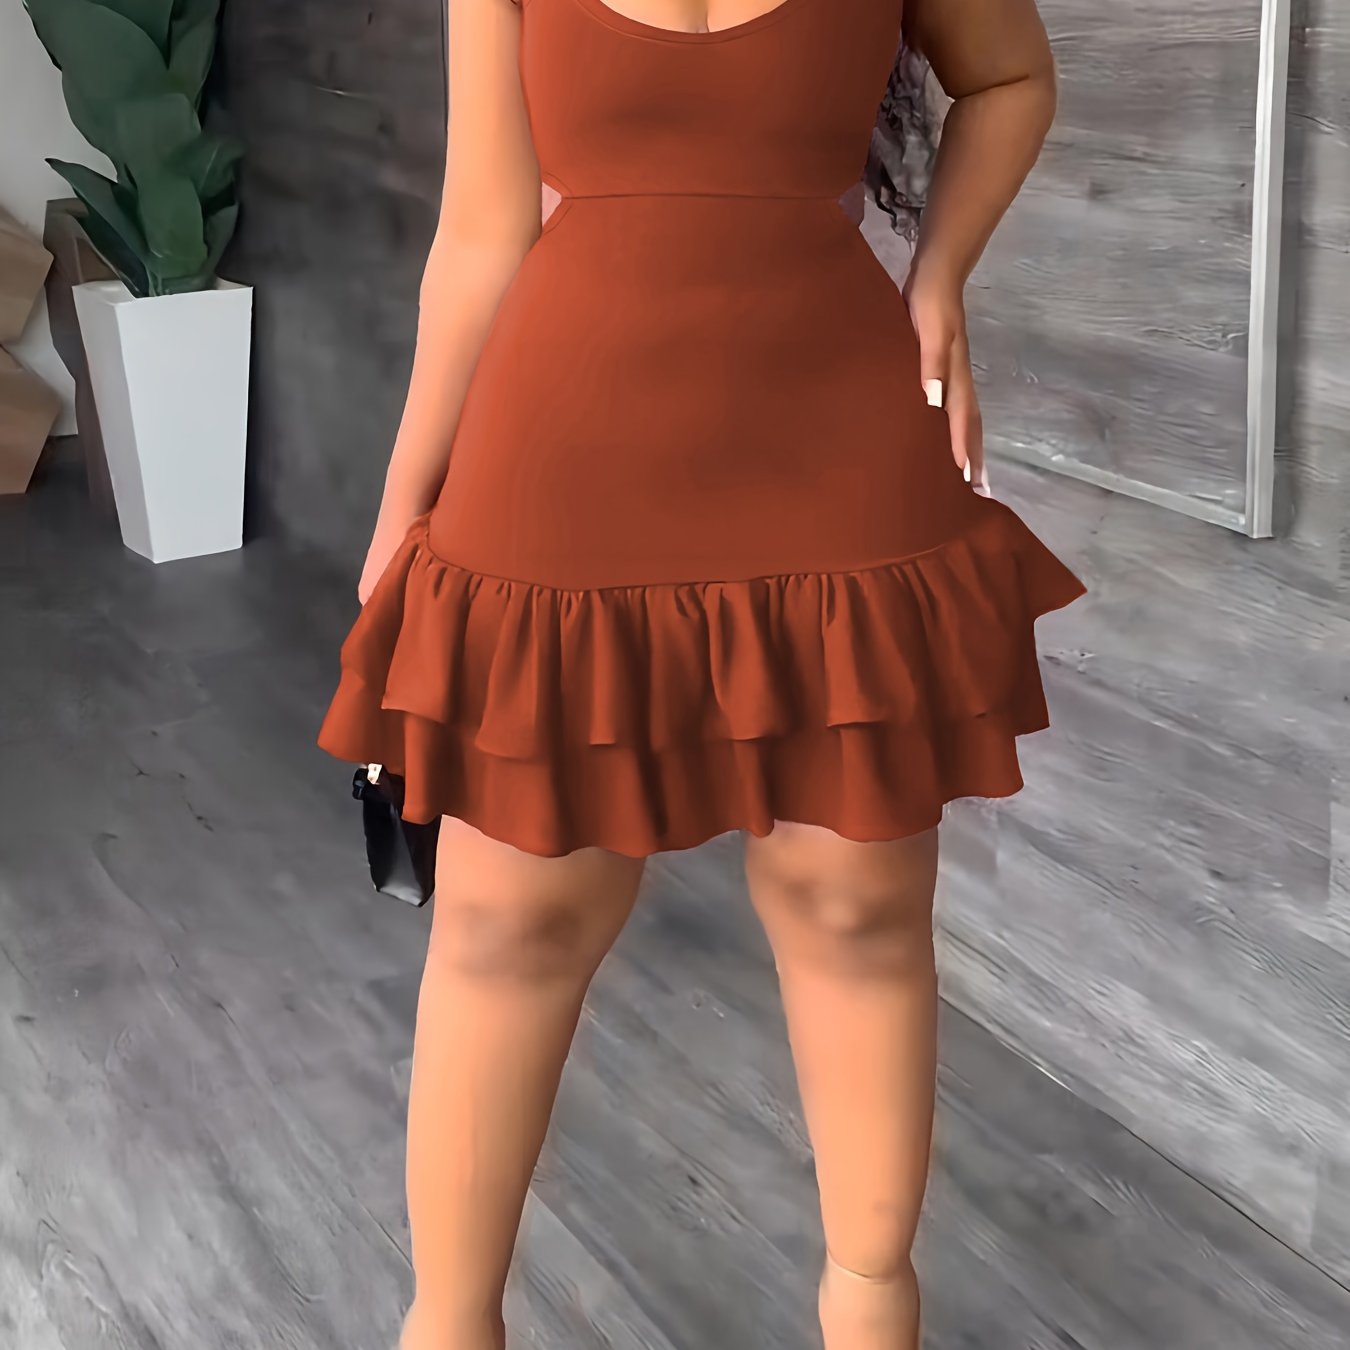 Layered Ruffle Hem Dress, Sexy Spaghetti Strap Cut Out Dress, Women's Clothing